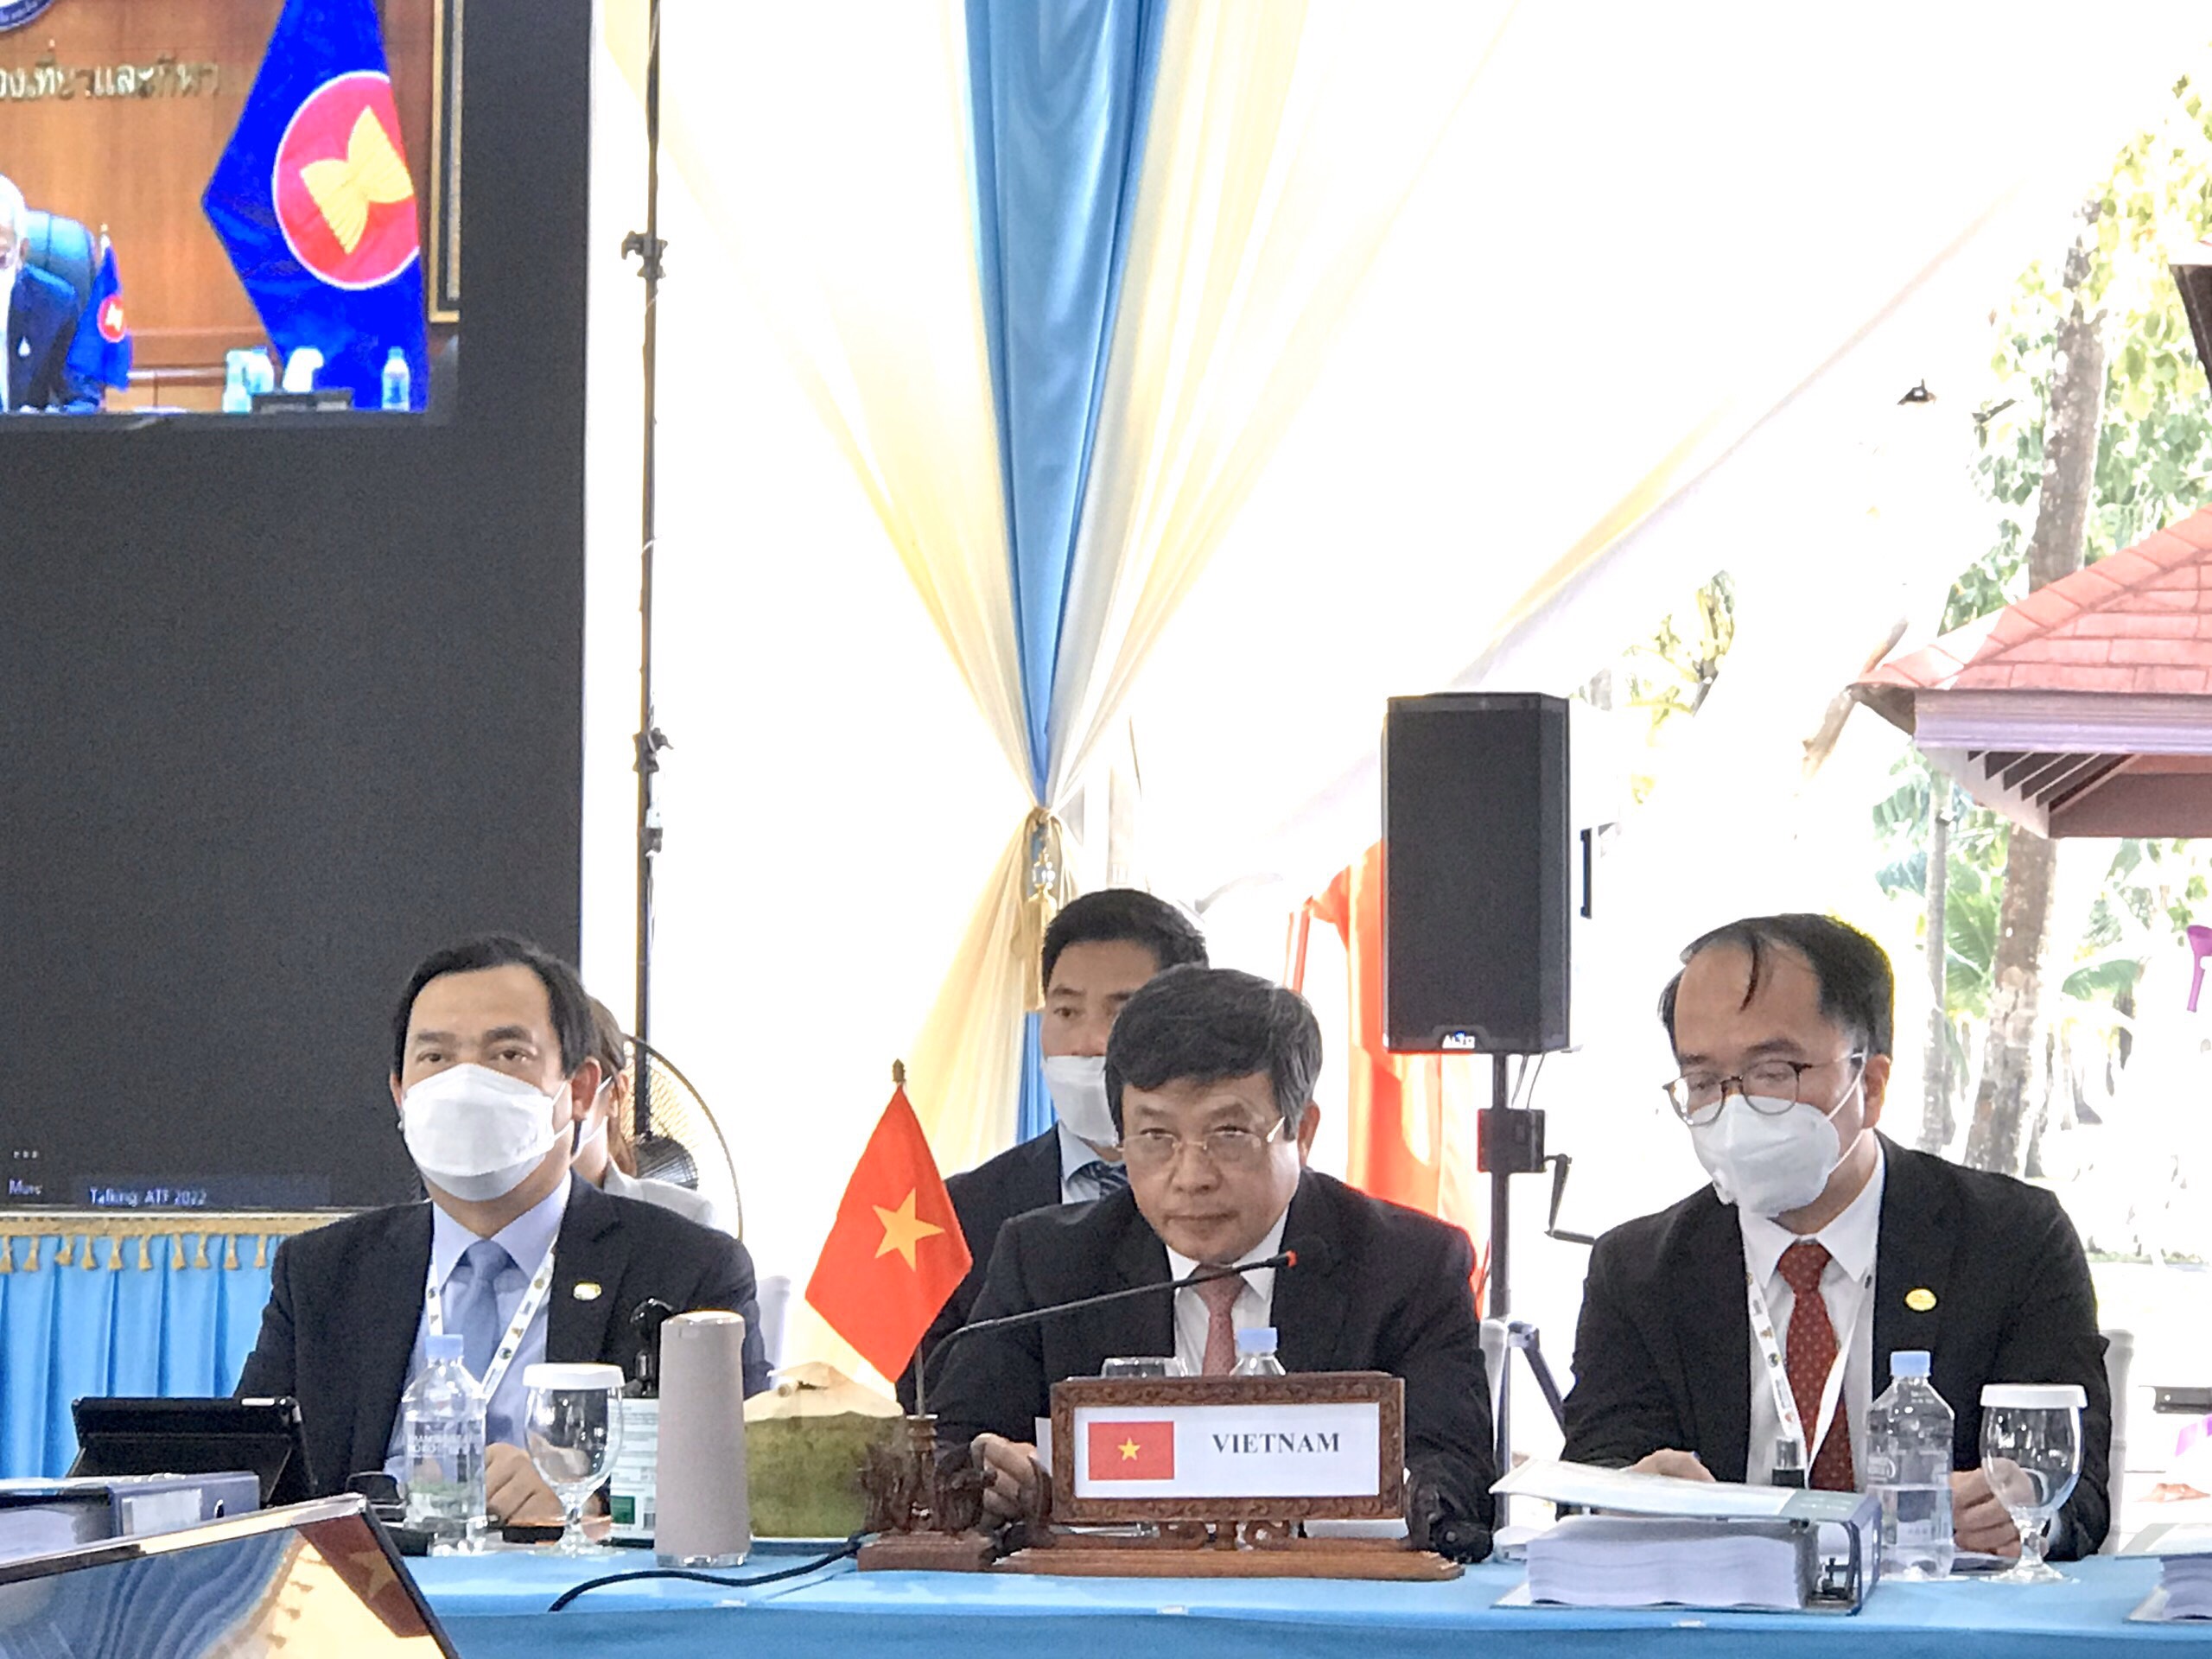 Đoàn Việt Nam tham dự Hội nghị